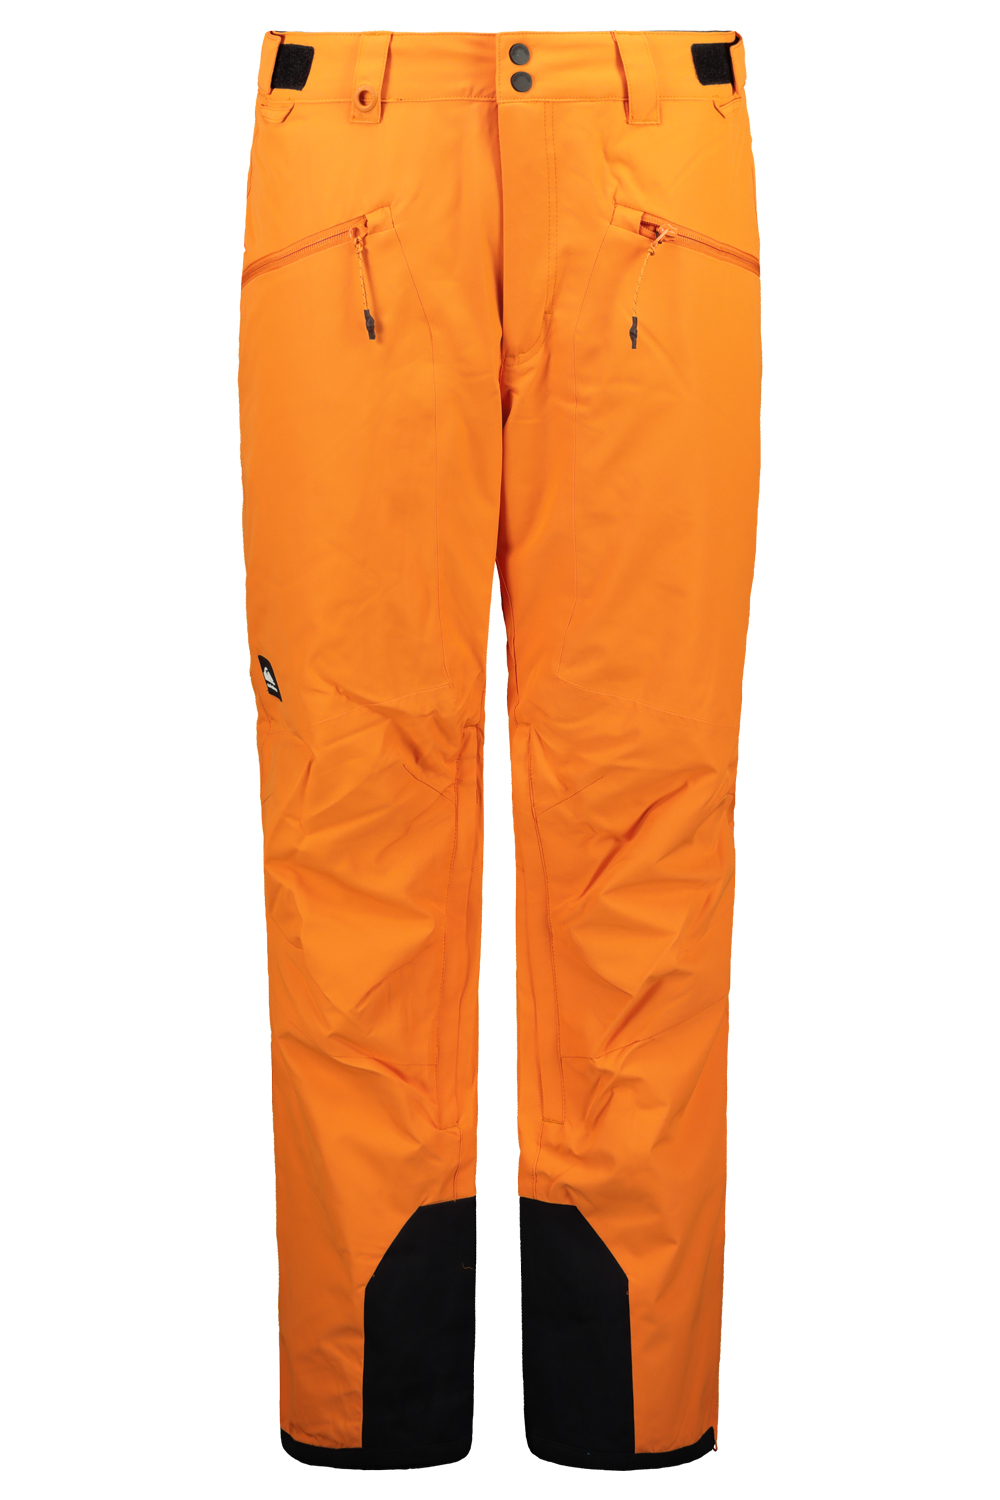 Men's snow pants Quiksilver BOUNDRY